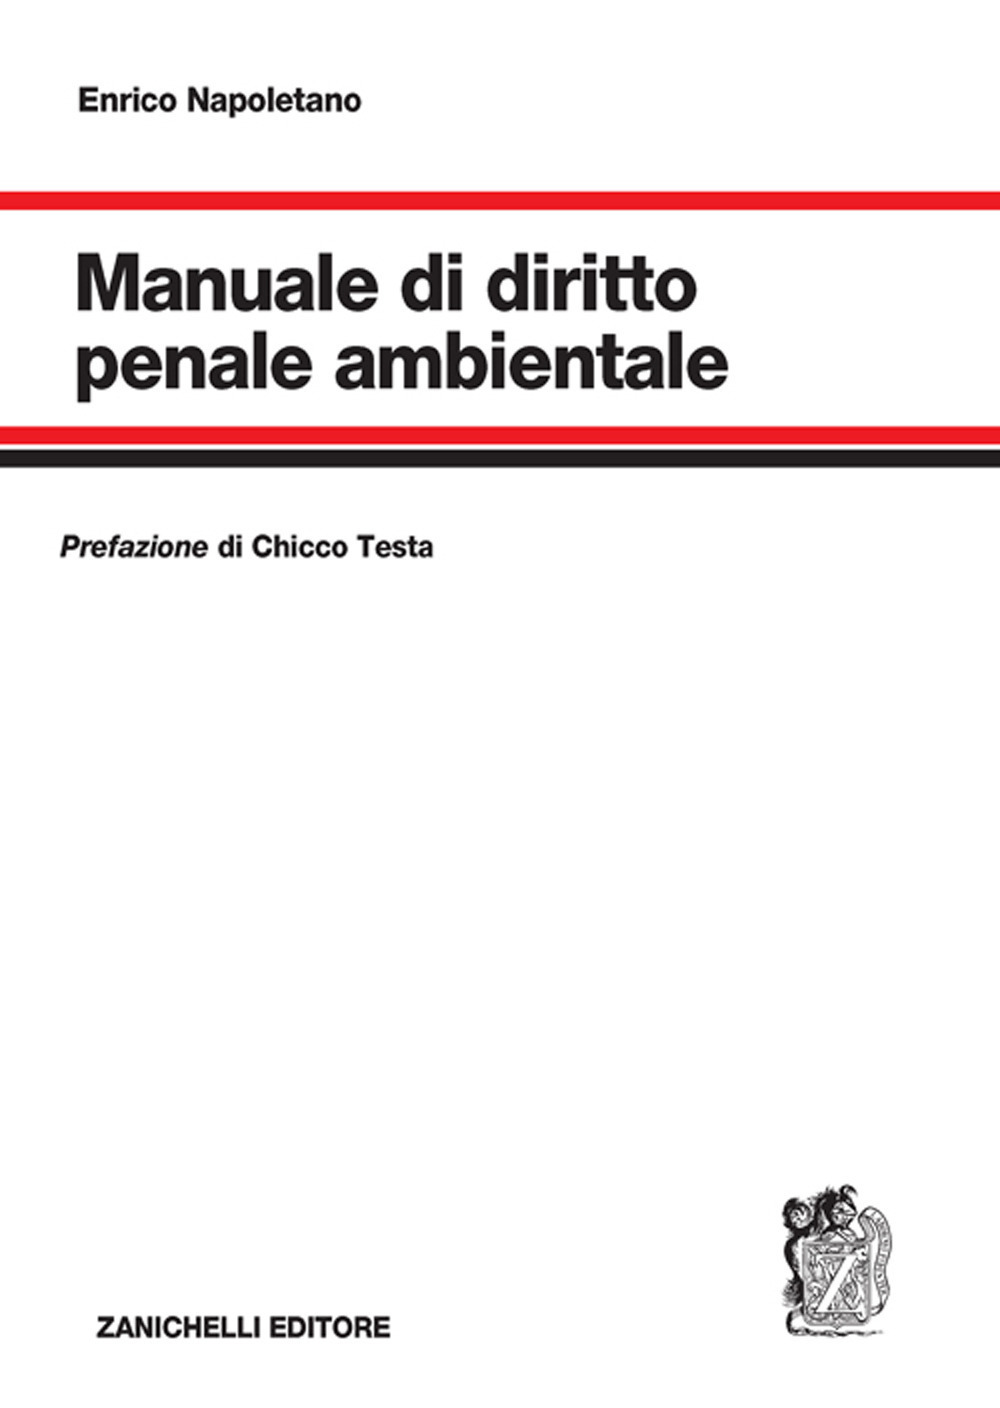 Image of Manuale di diritto penale ambientale